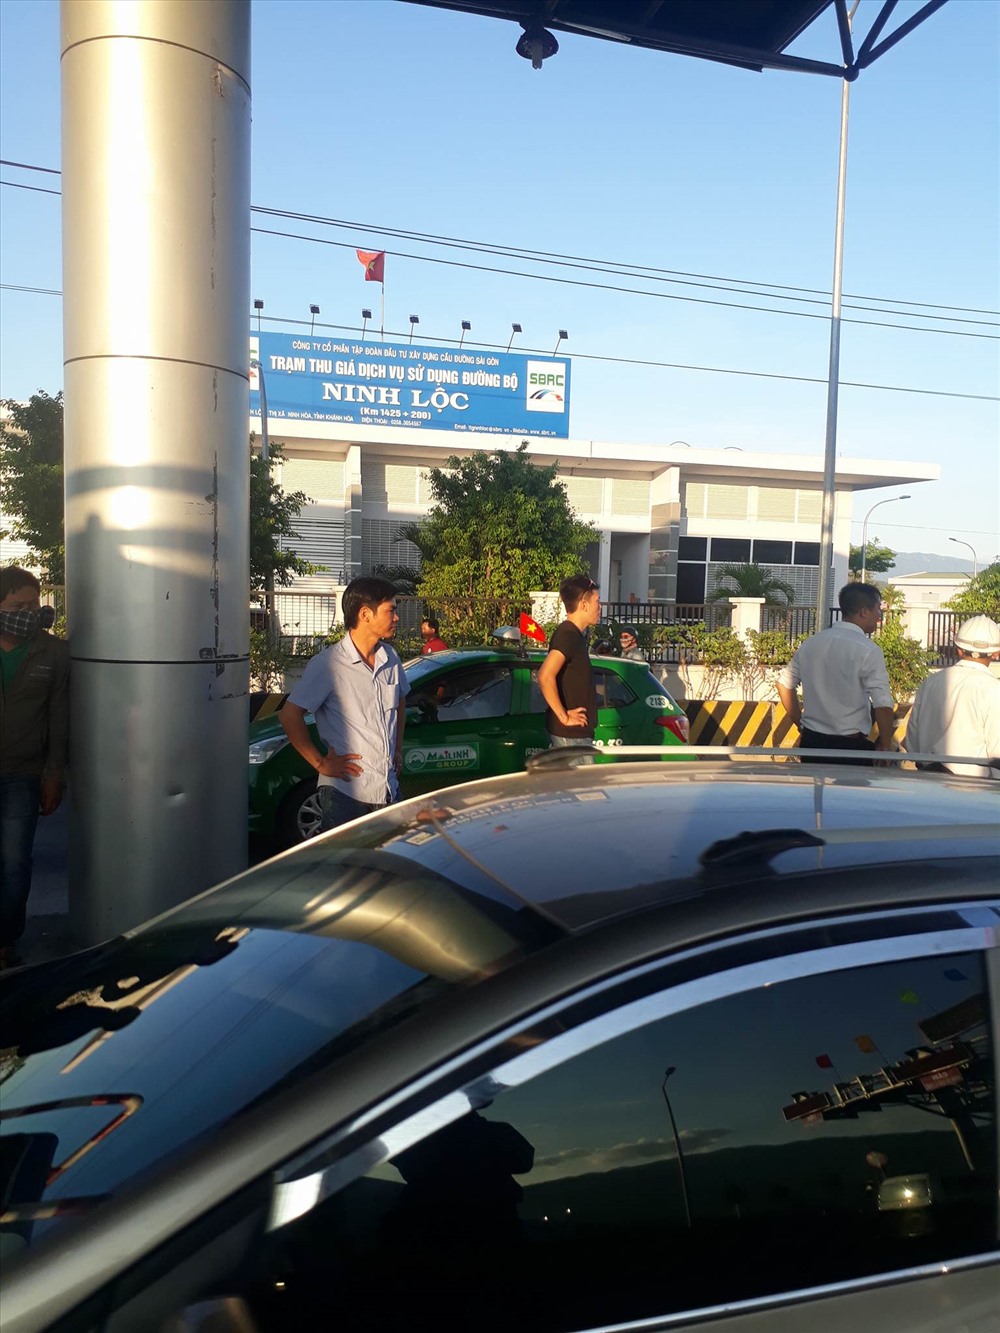 Tài xế dừng xe yêu cầu BOT Ninh Lộc giải thích về việc miễn, giảm vé.